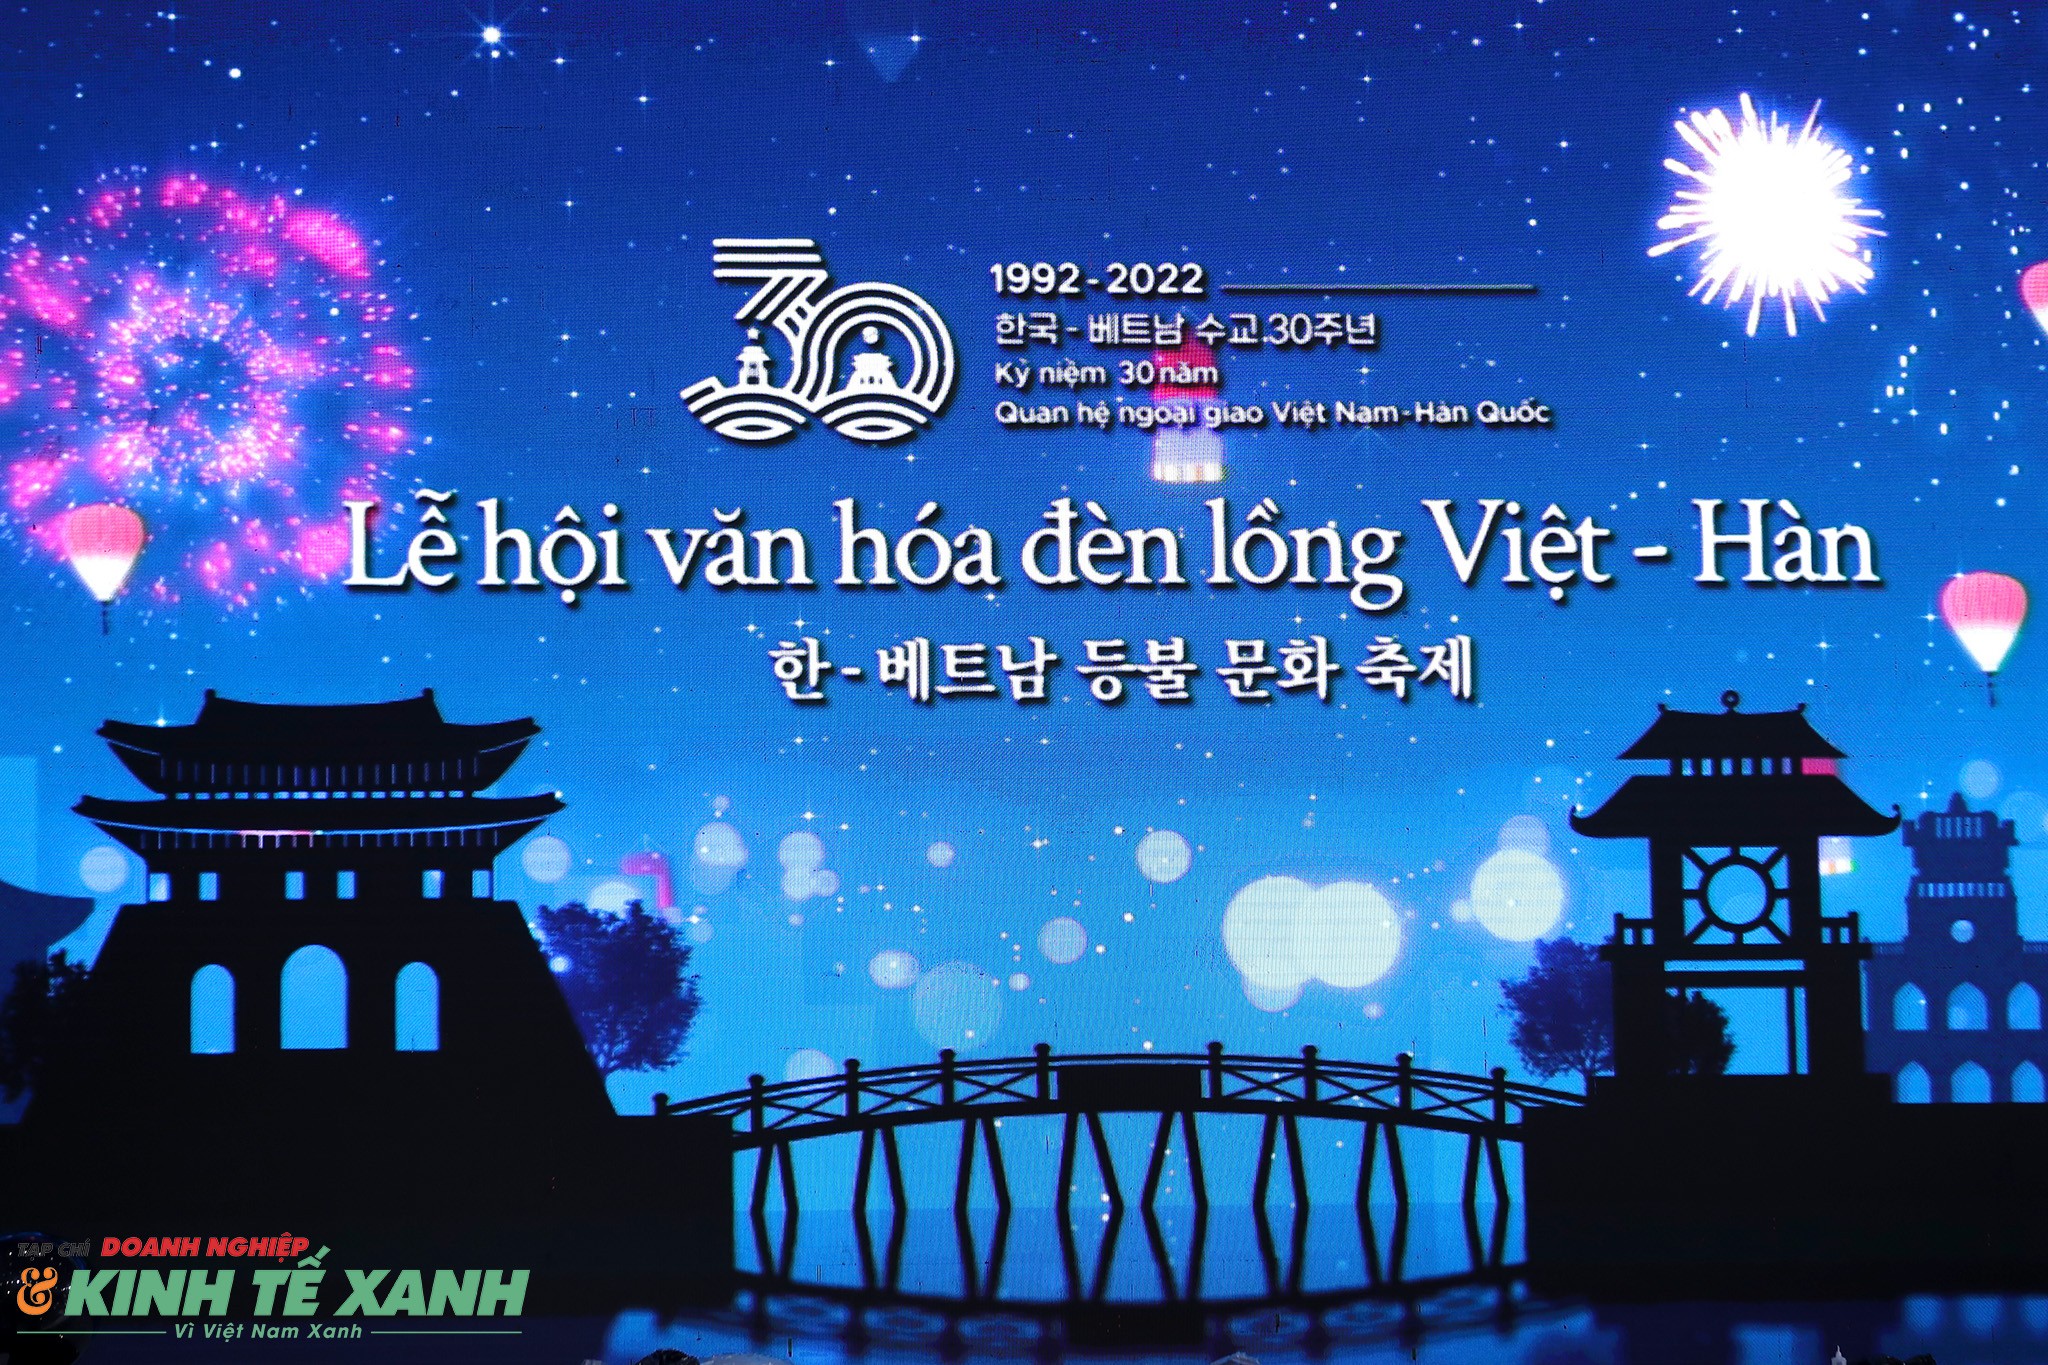 Lễ hội đèn lồng là một trong những lễ hội truyền thống đẹp và ấm áp nhất của người dân Việt Nam. Trong bức hình này, bạn sẽ thấy hàng nghìn đèn lồng lung linh, phản ánh trên mặt nước, tạo nên khung cảnh cực kỳ lãng mạn và mộng mơ.